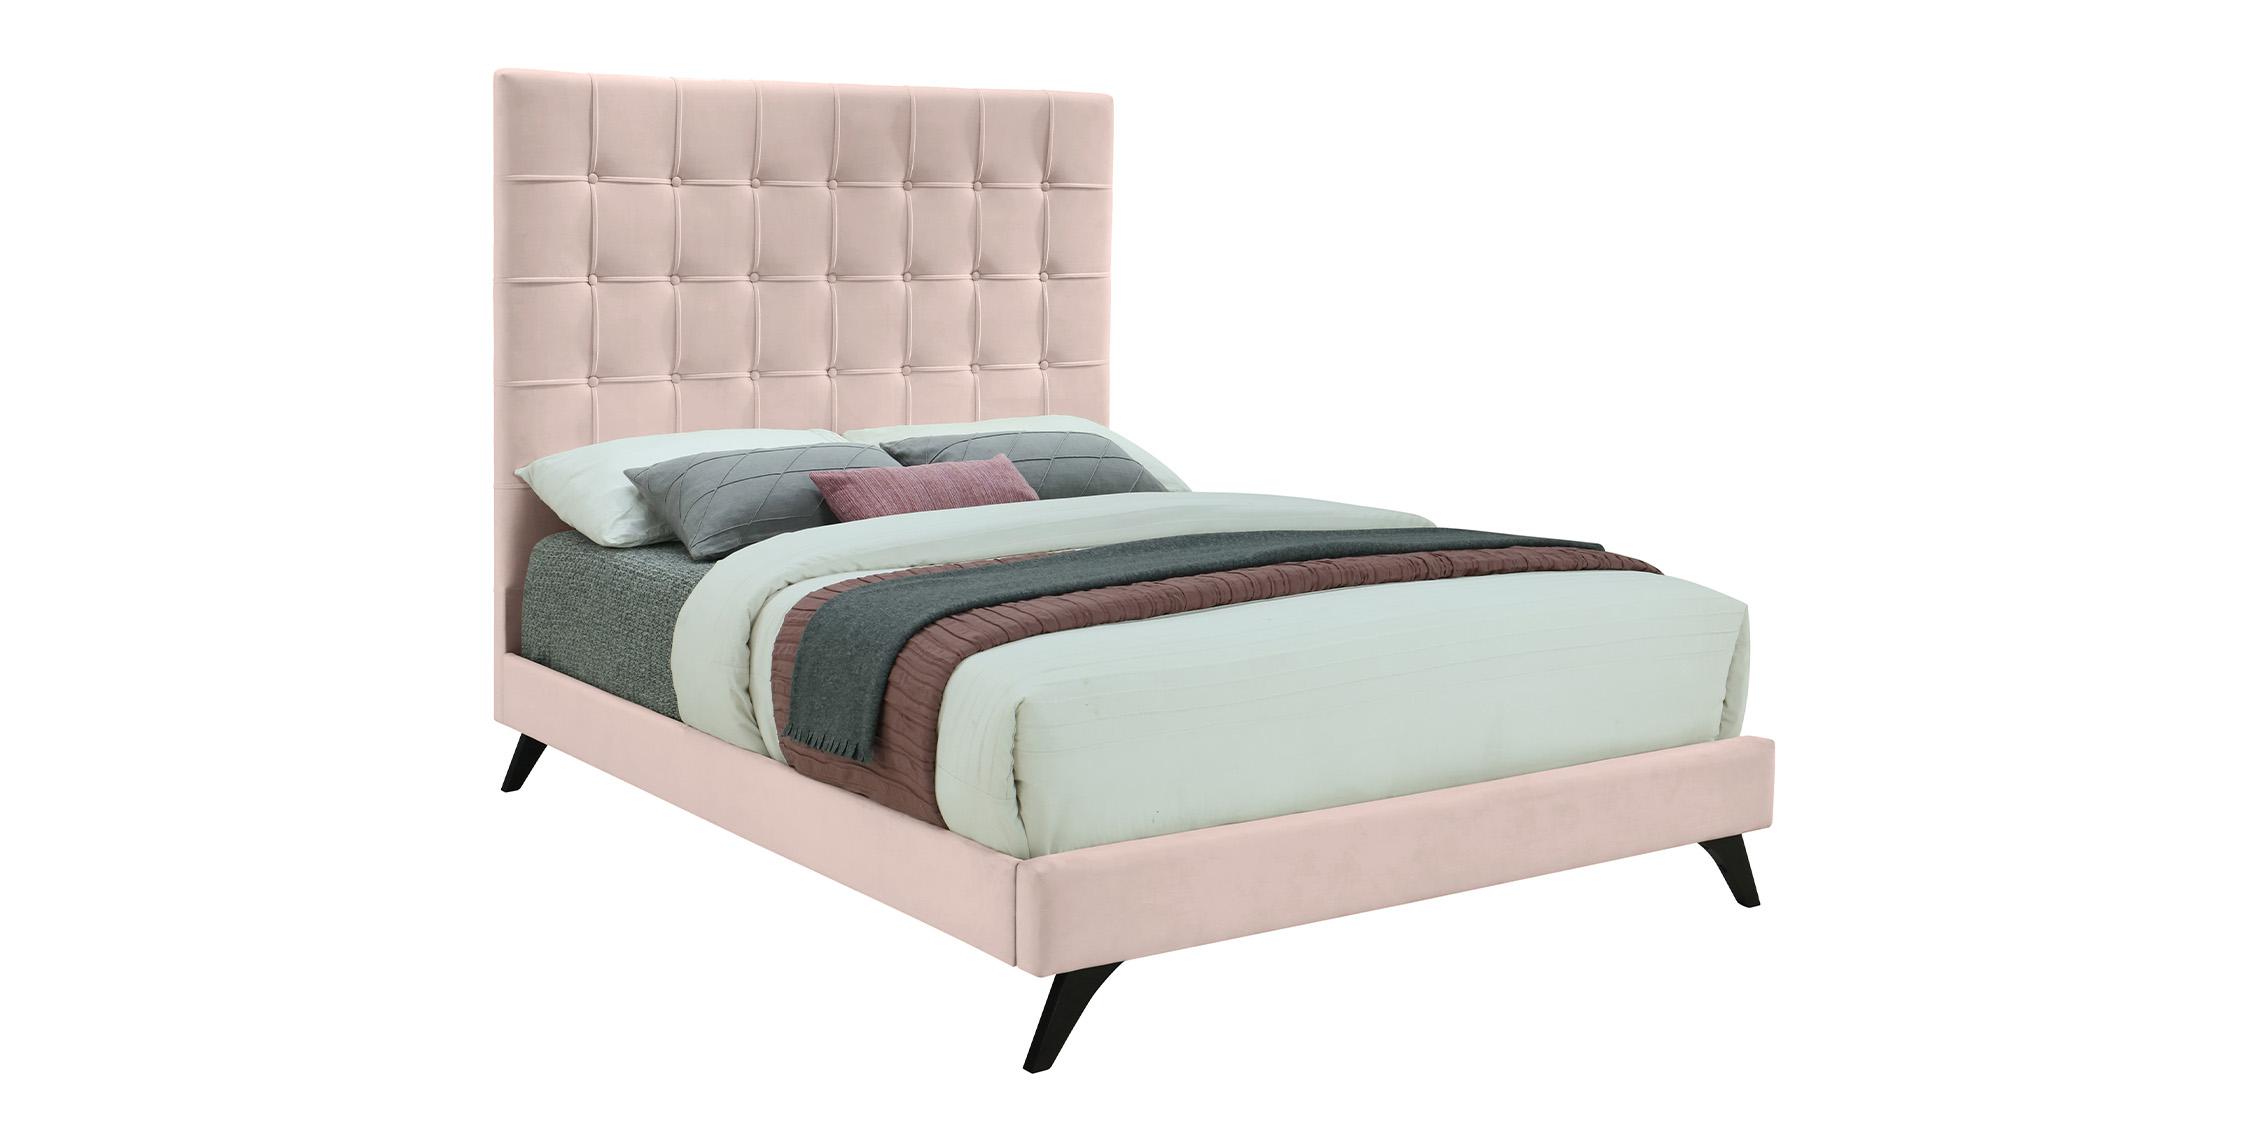 Contemporary, Modern Platform Bed ELLY EllyPink-Q EllyPink-Q in Espresso, Pink Fabric